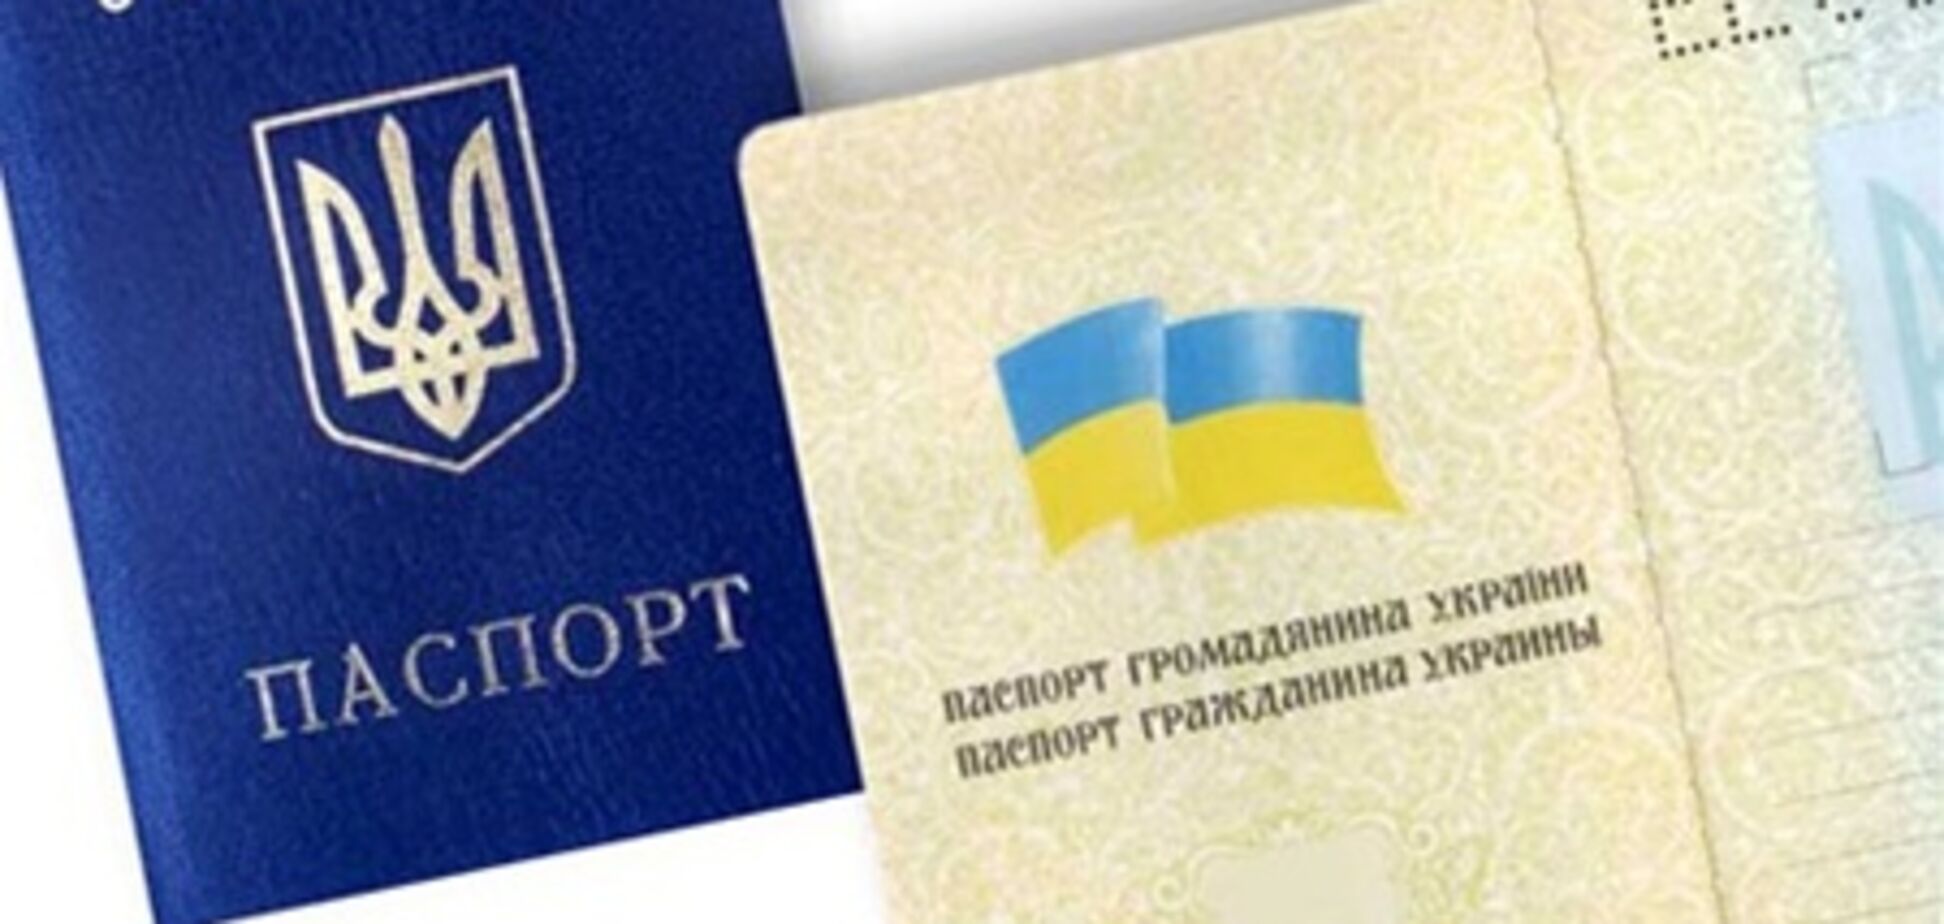 Колесниченко: переводить имена на украинский язык больше не нужно